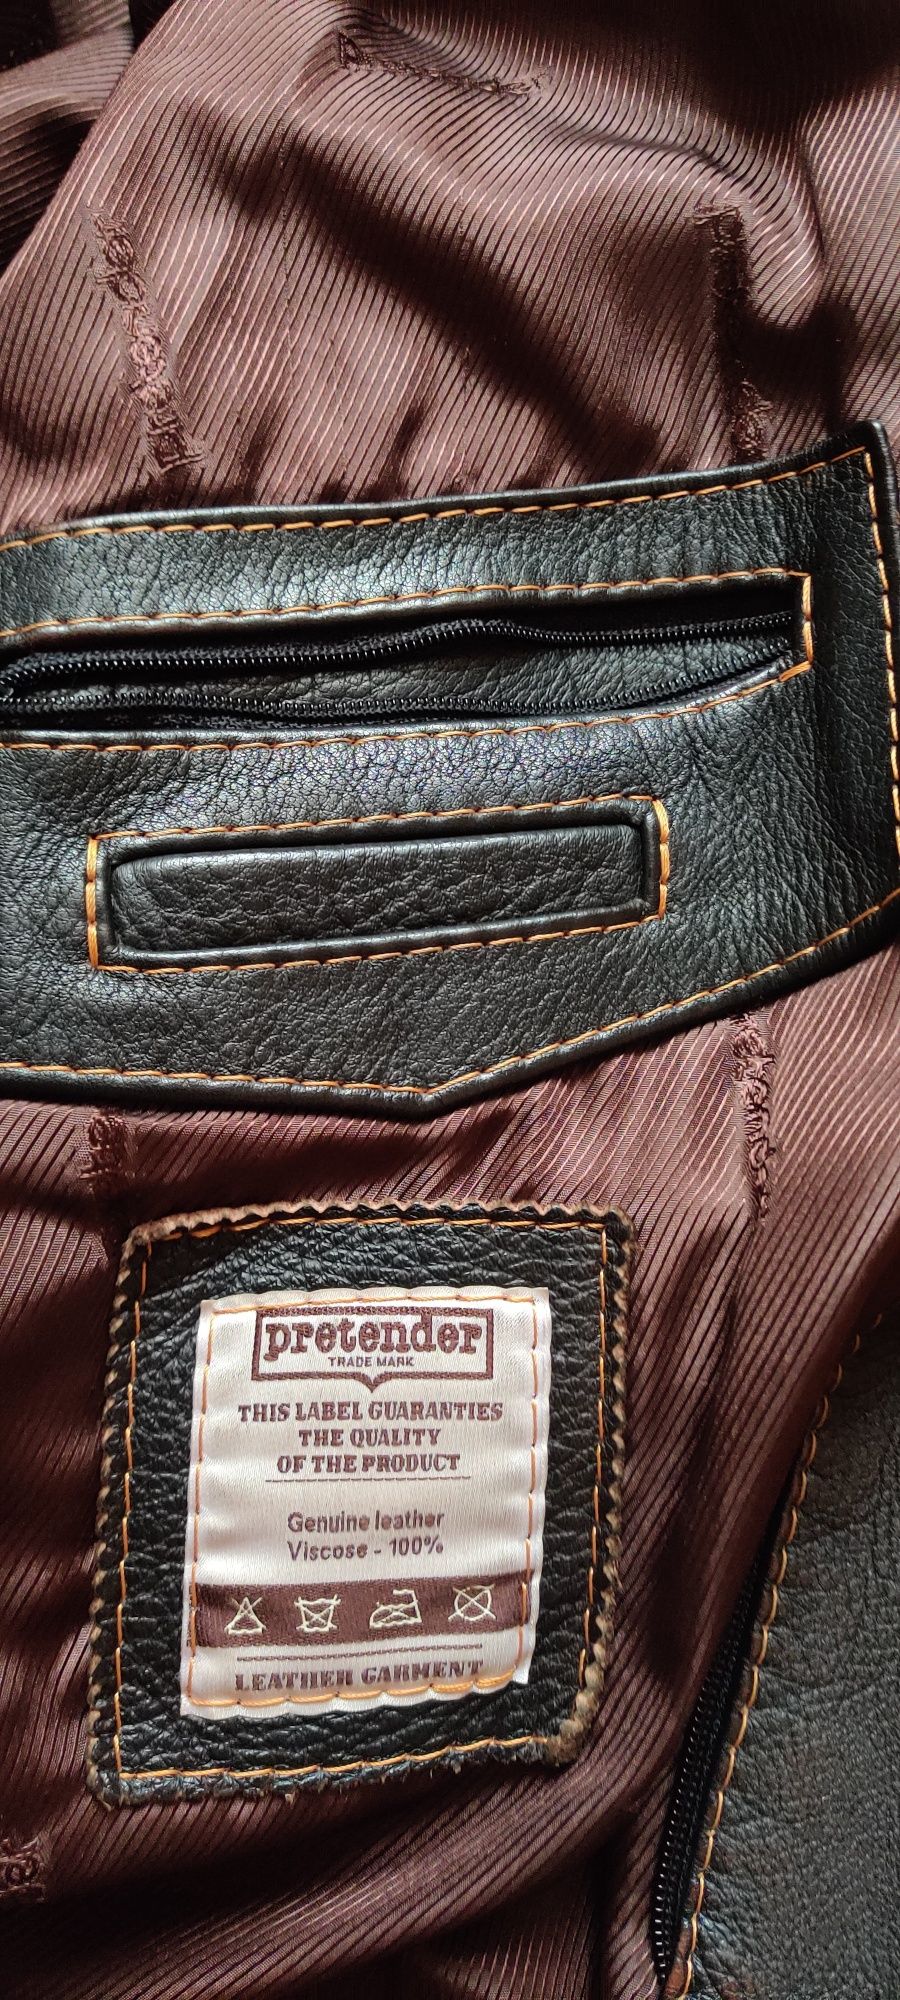 Куртка "Harley Davidson" от бренда  Pretender, кожа, size L.